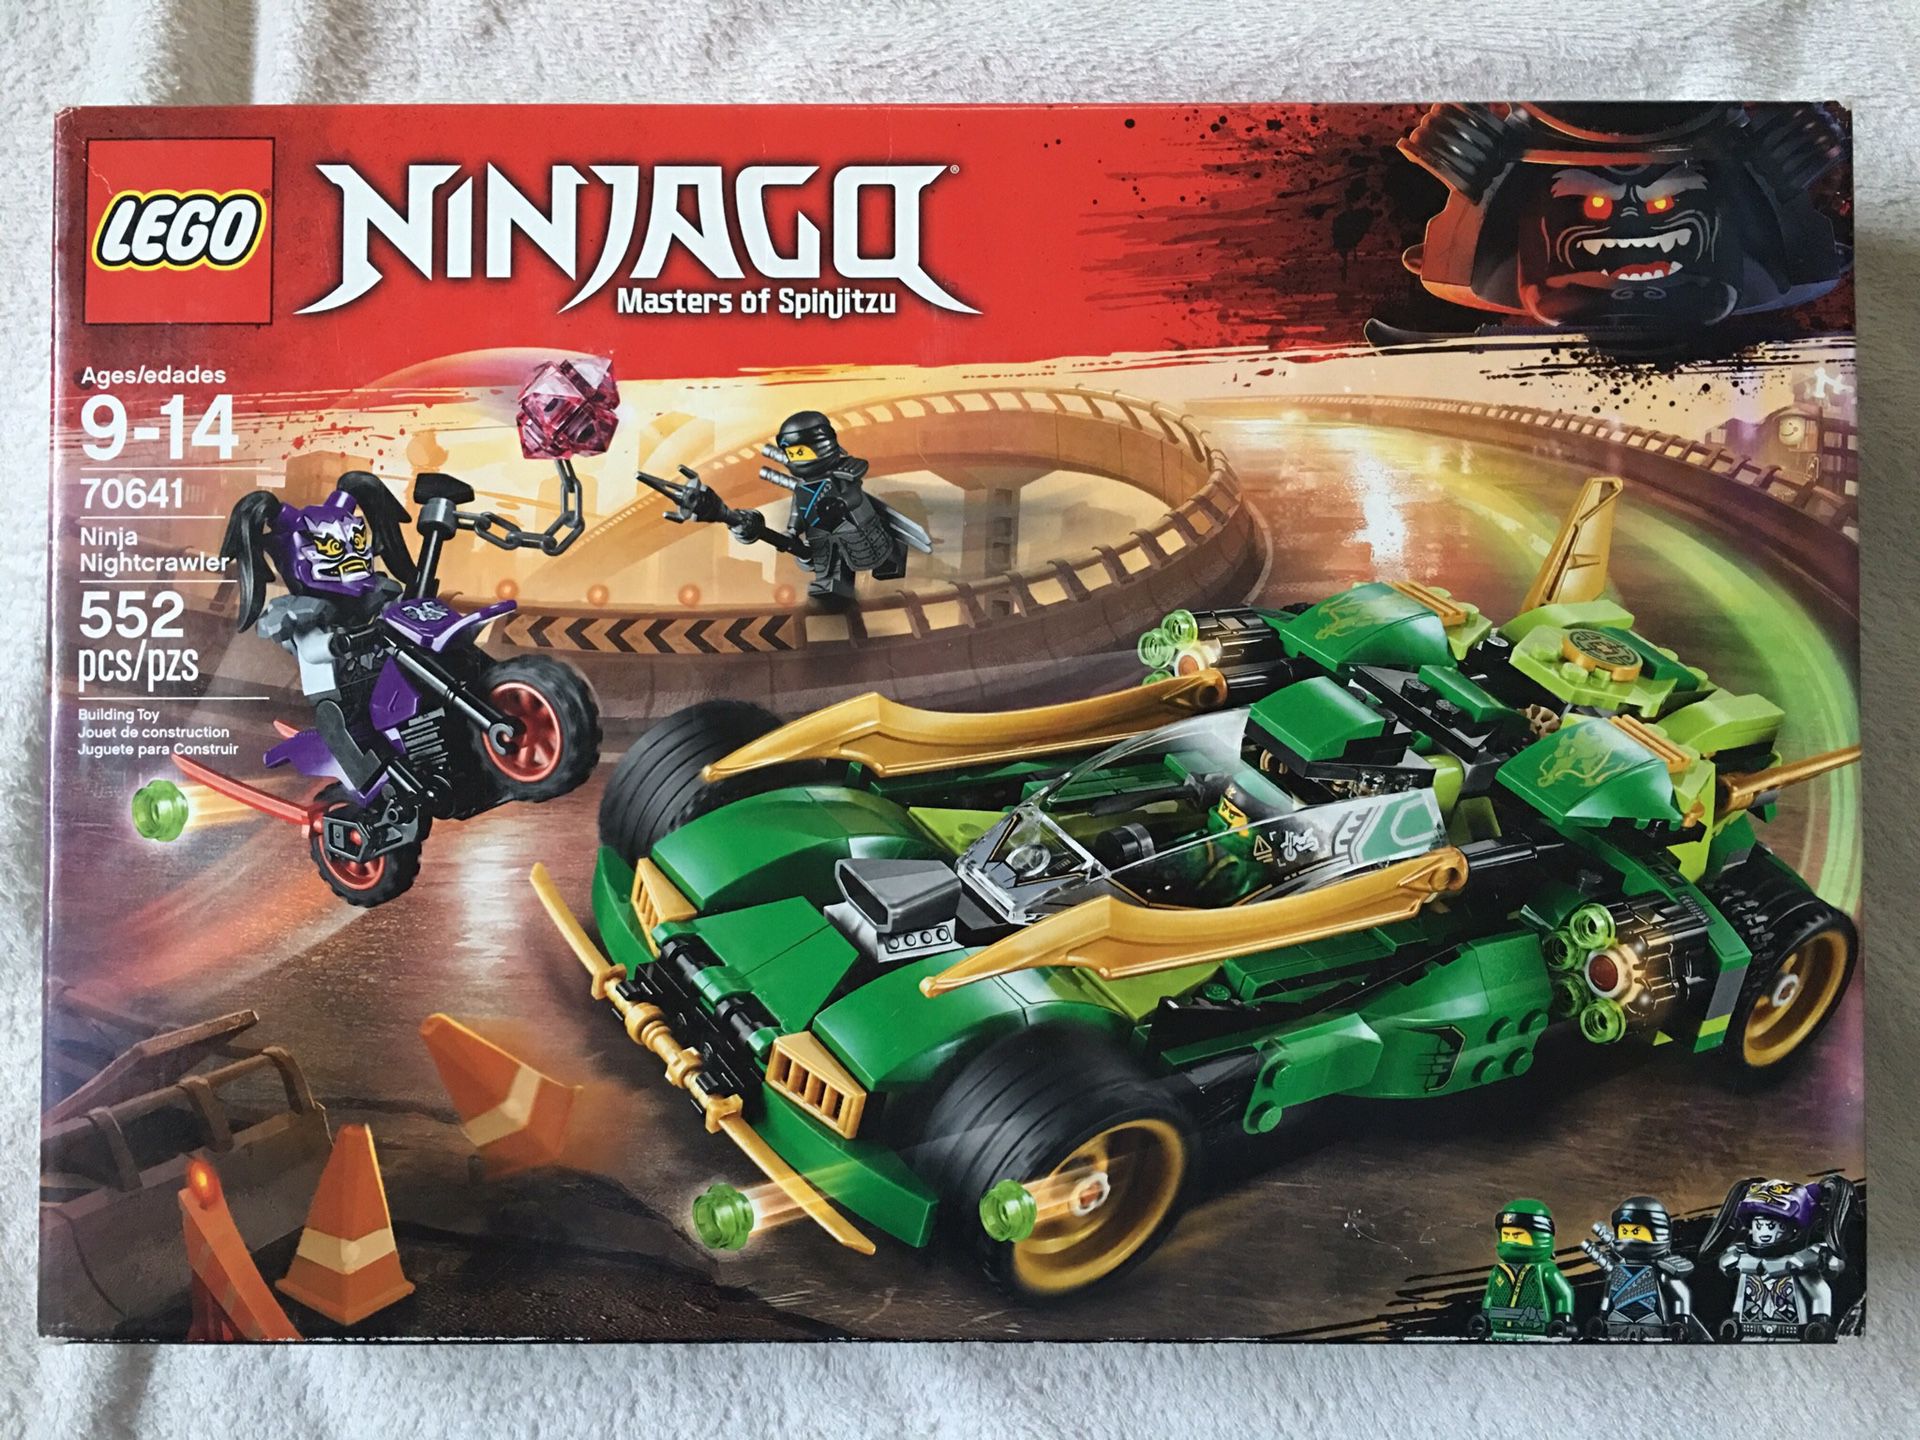 LEGO 70641 Ninjago Nightcrawler $20 - Brand New and unopened